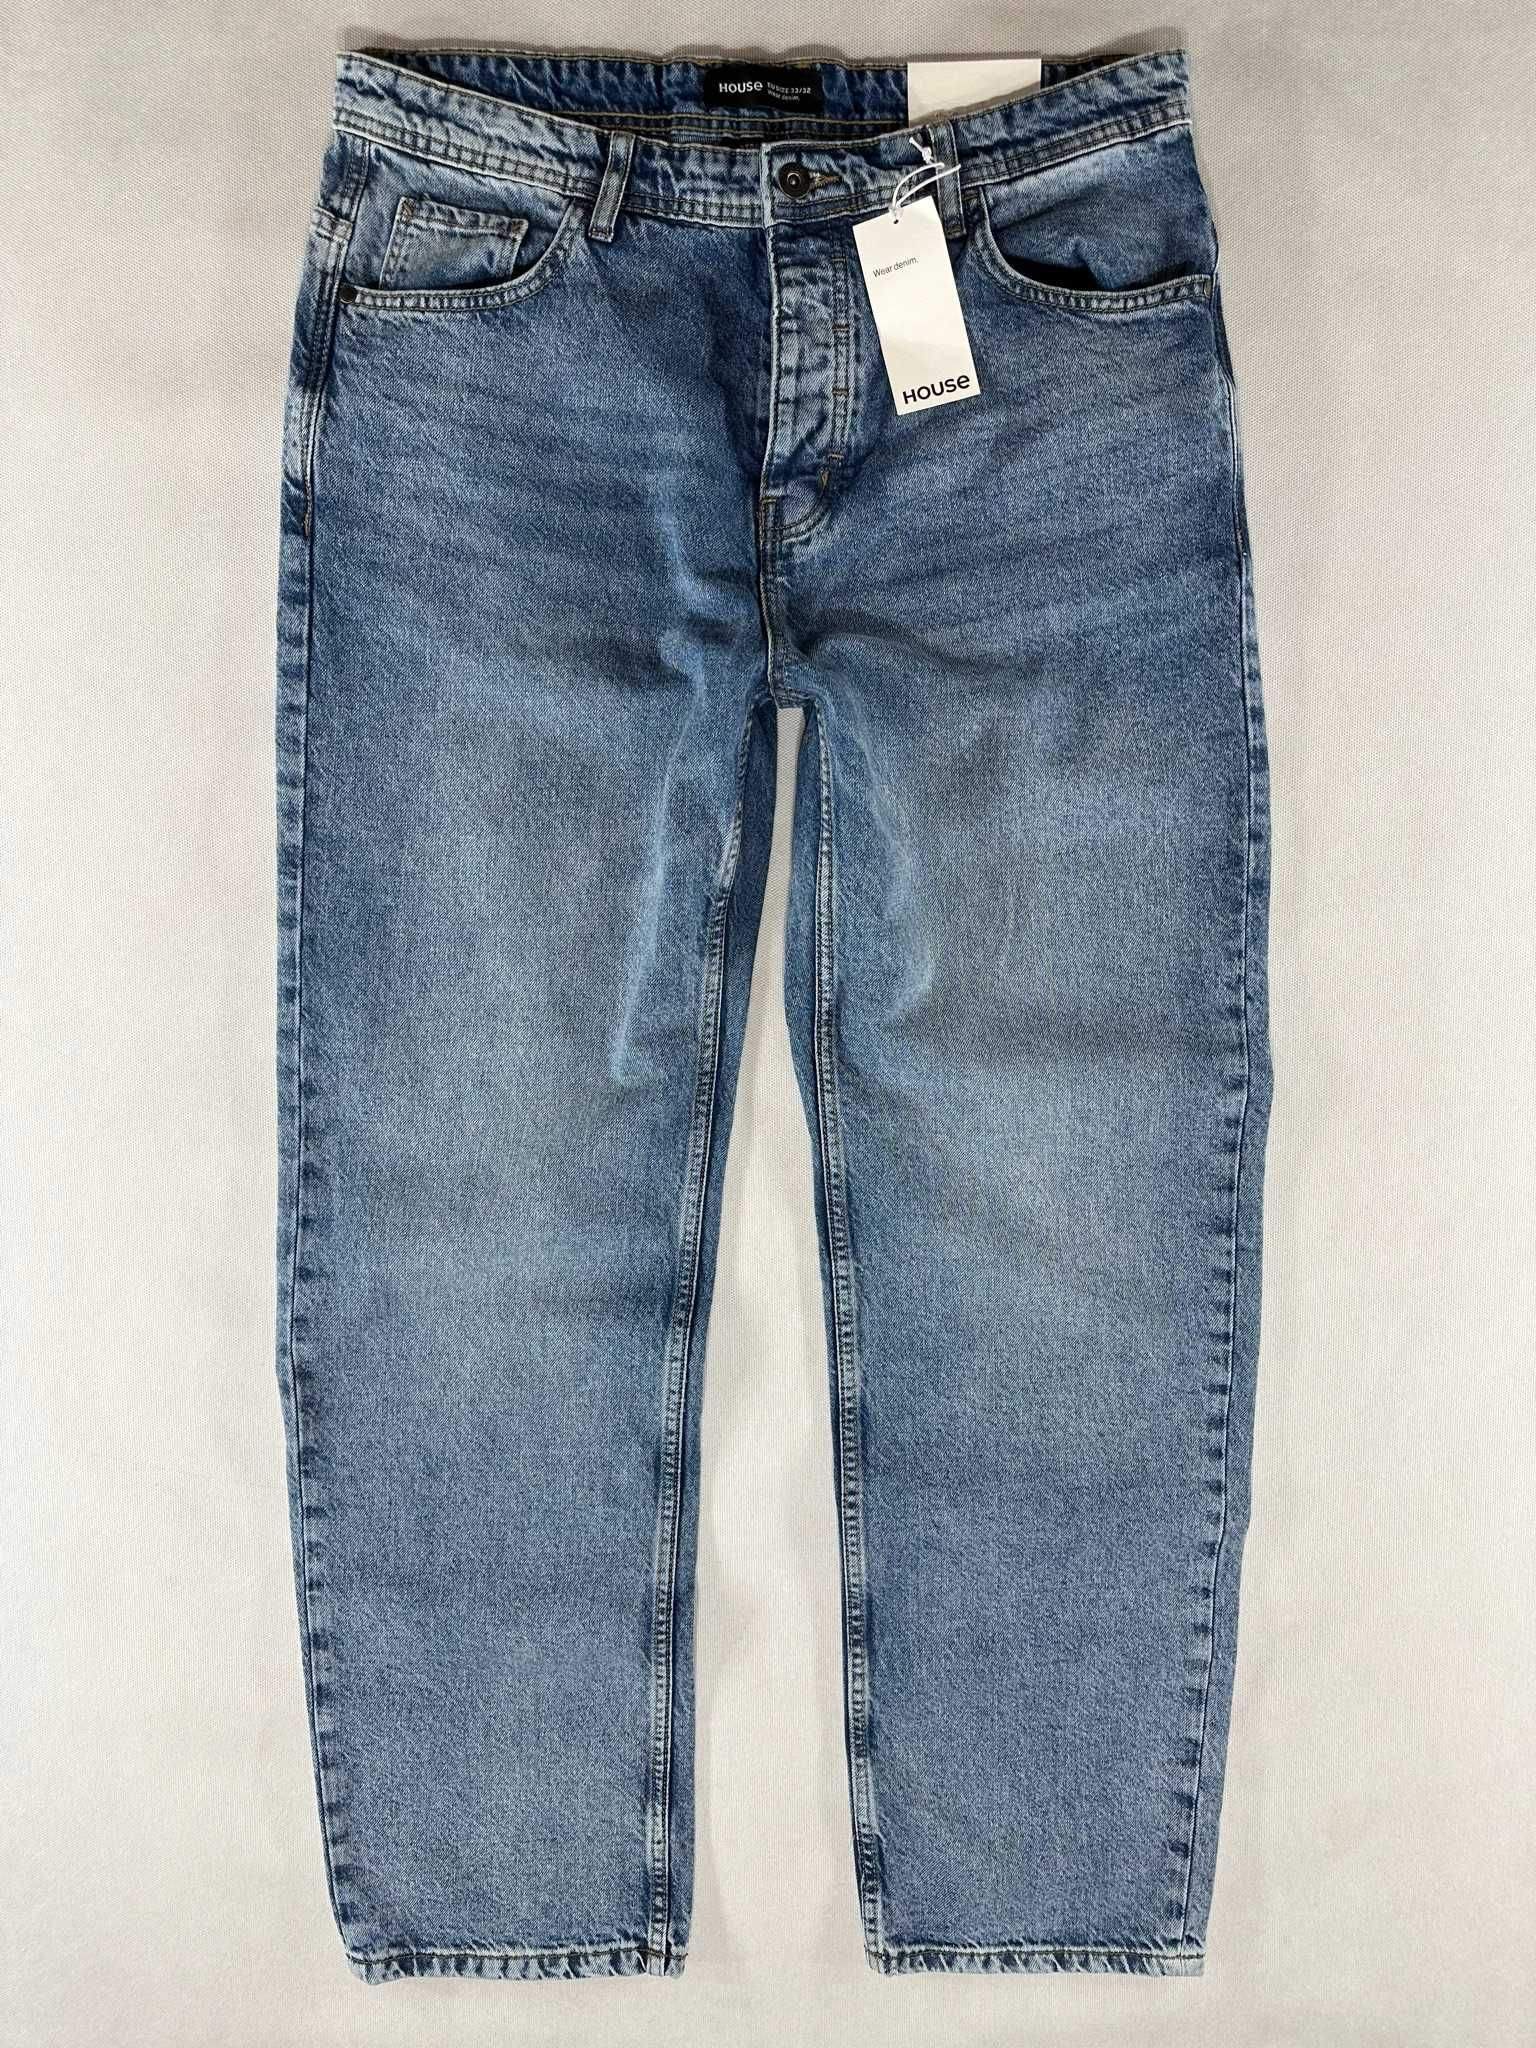 HOUSE jeans straight fit proste luźne nogawki W36L32 98cm